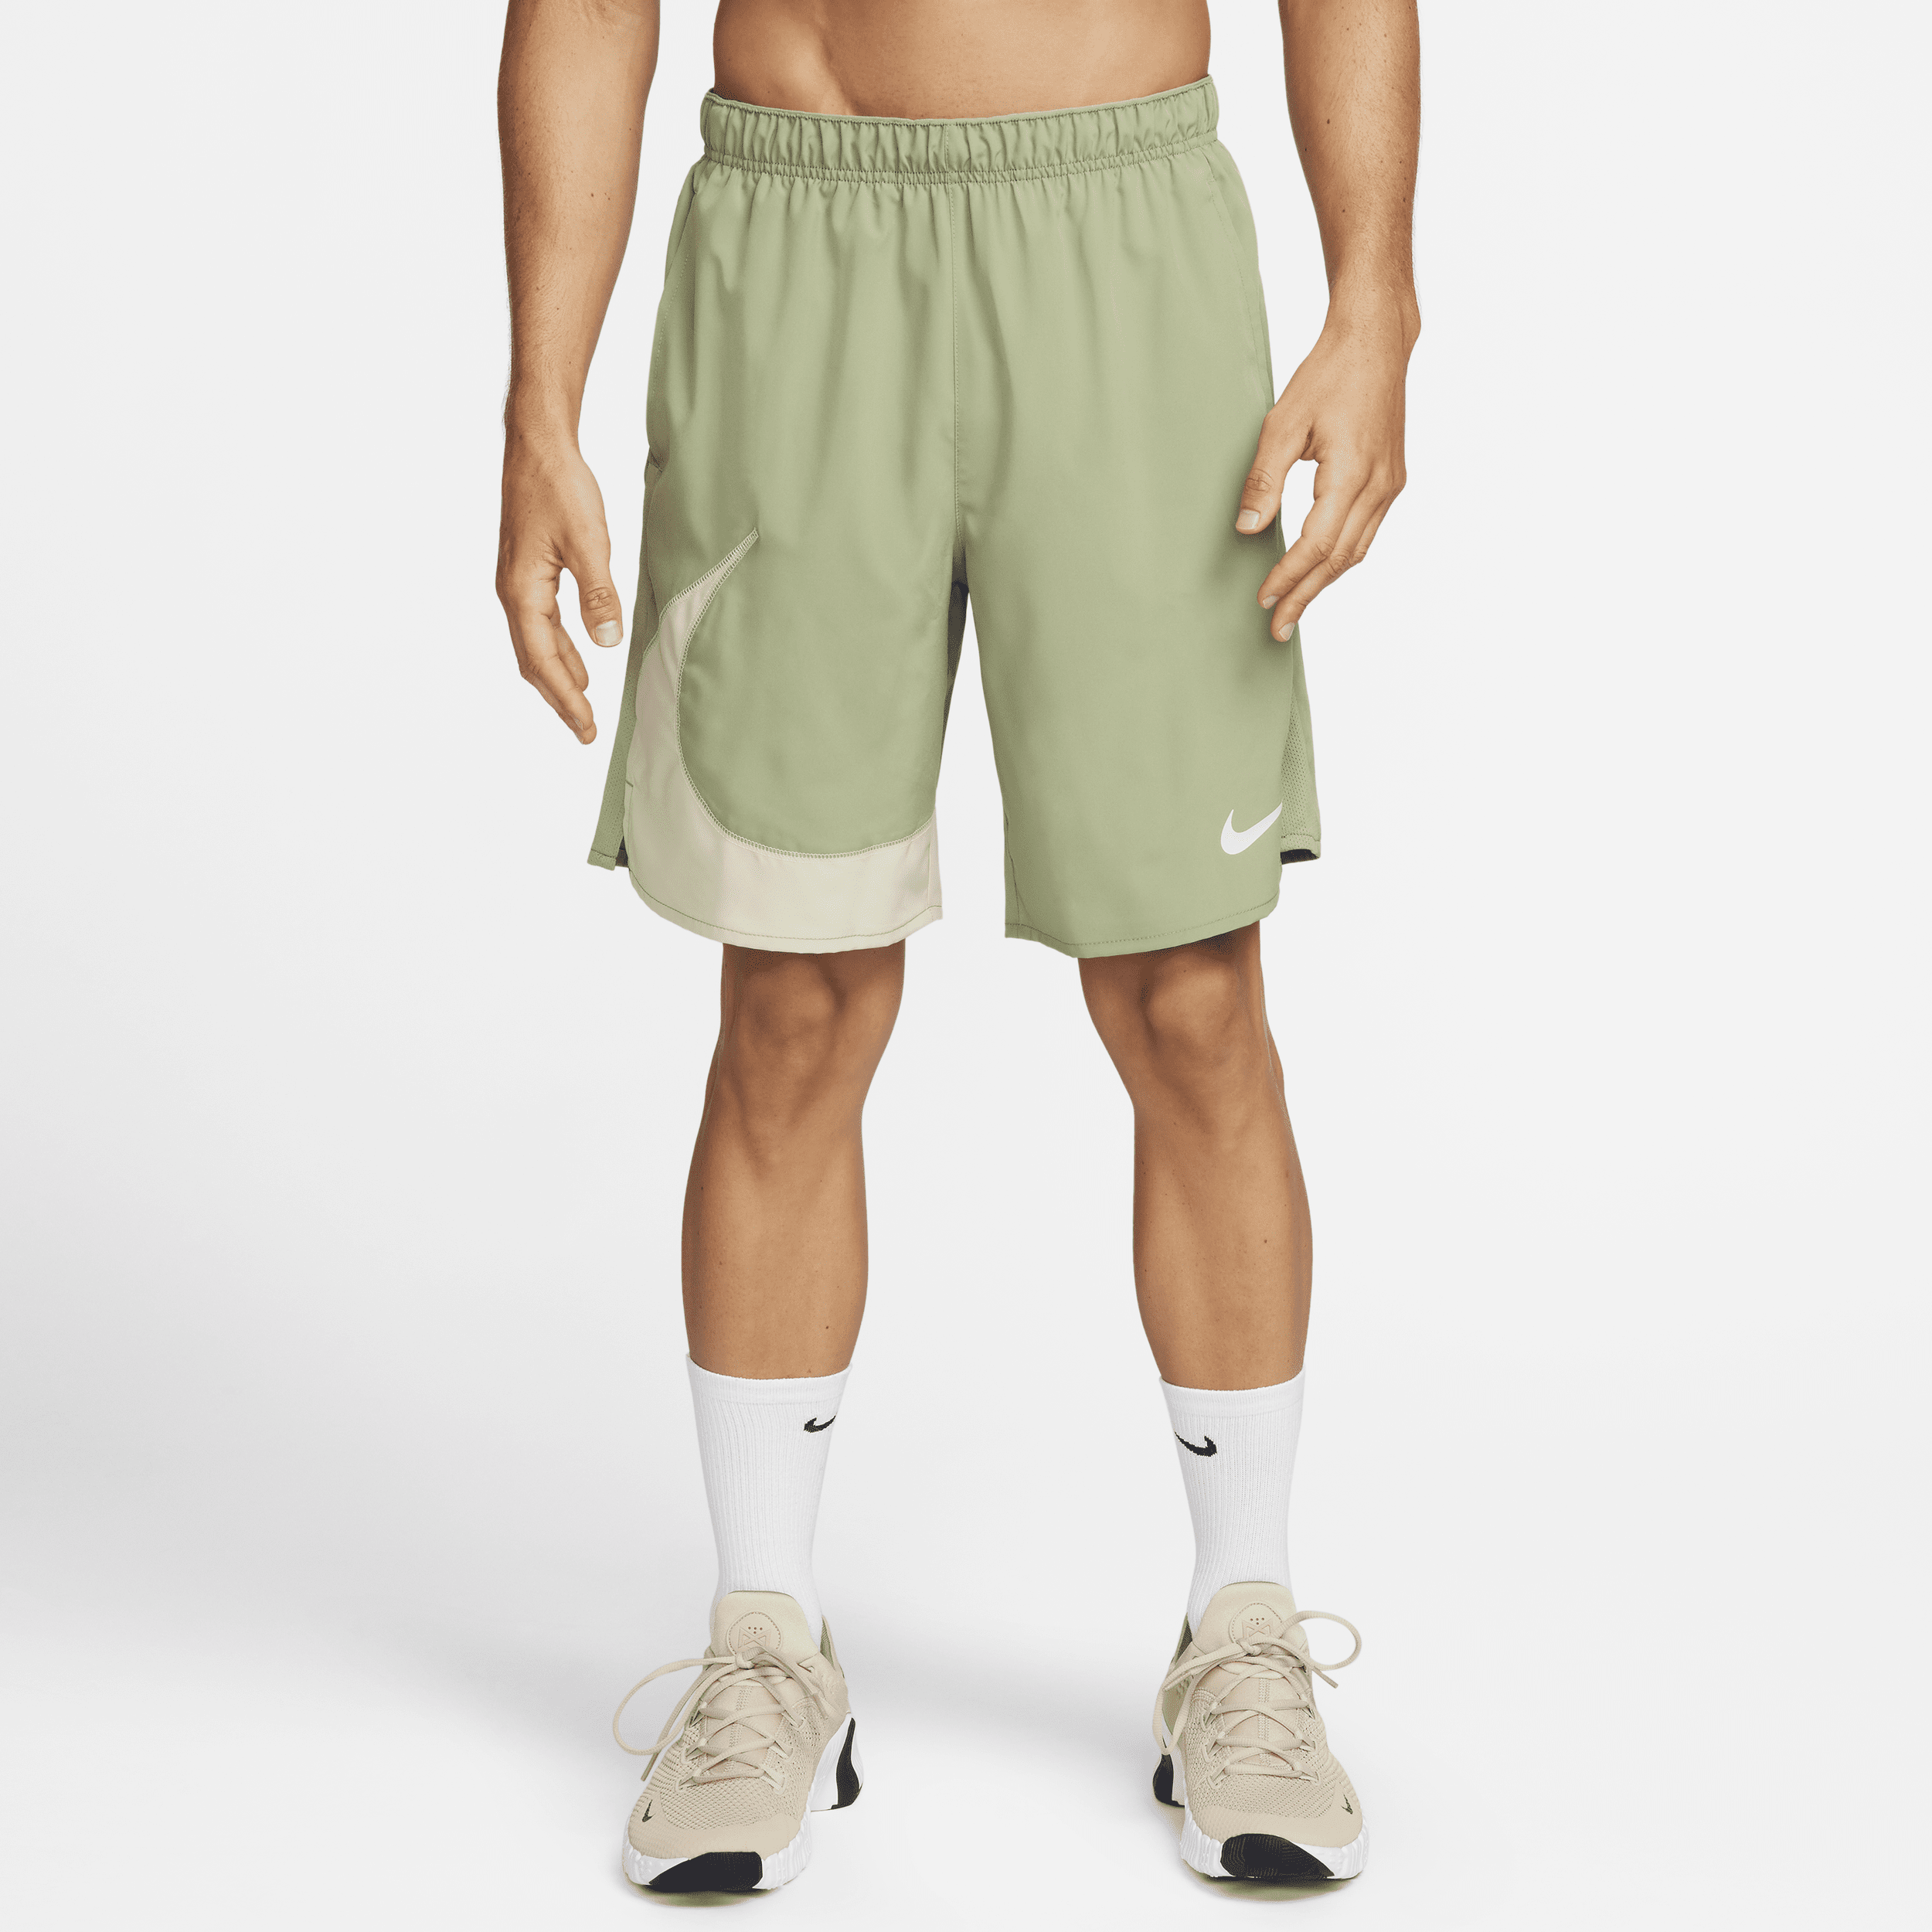 Alsidige Nike Dri-FIT Challenger-shorts (23 cm) uden foring til mænd - grøn